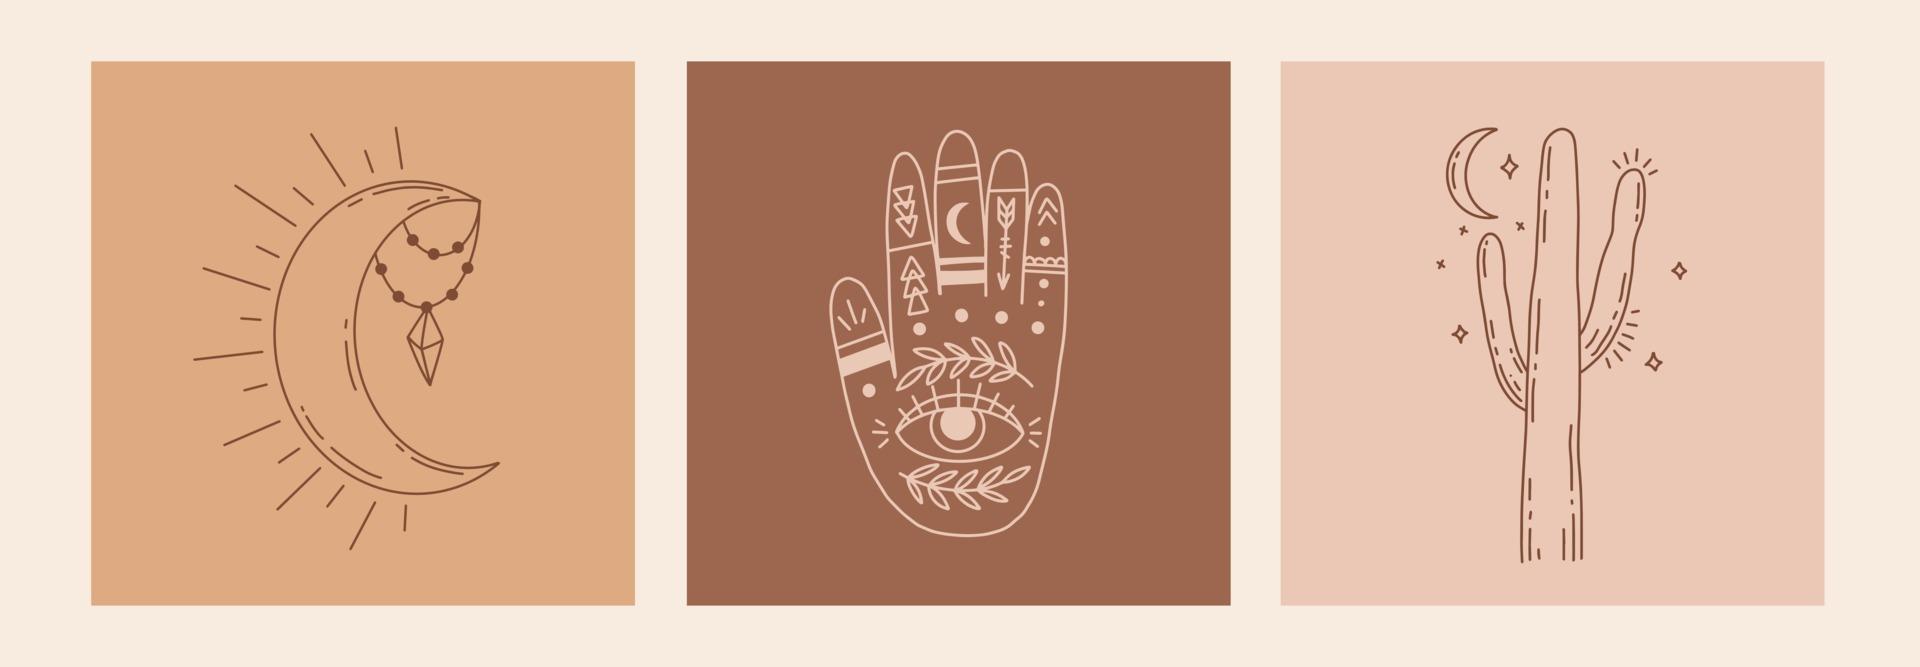 set esoterico di doodle mistico boho. poster di arte linea magica con mani, cactus, luna e stelle. bohémien moderna illustrazione vettoriale